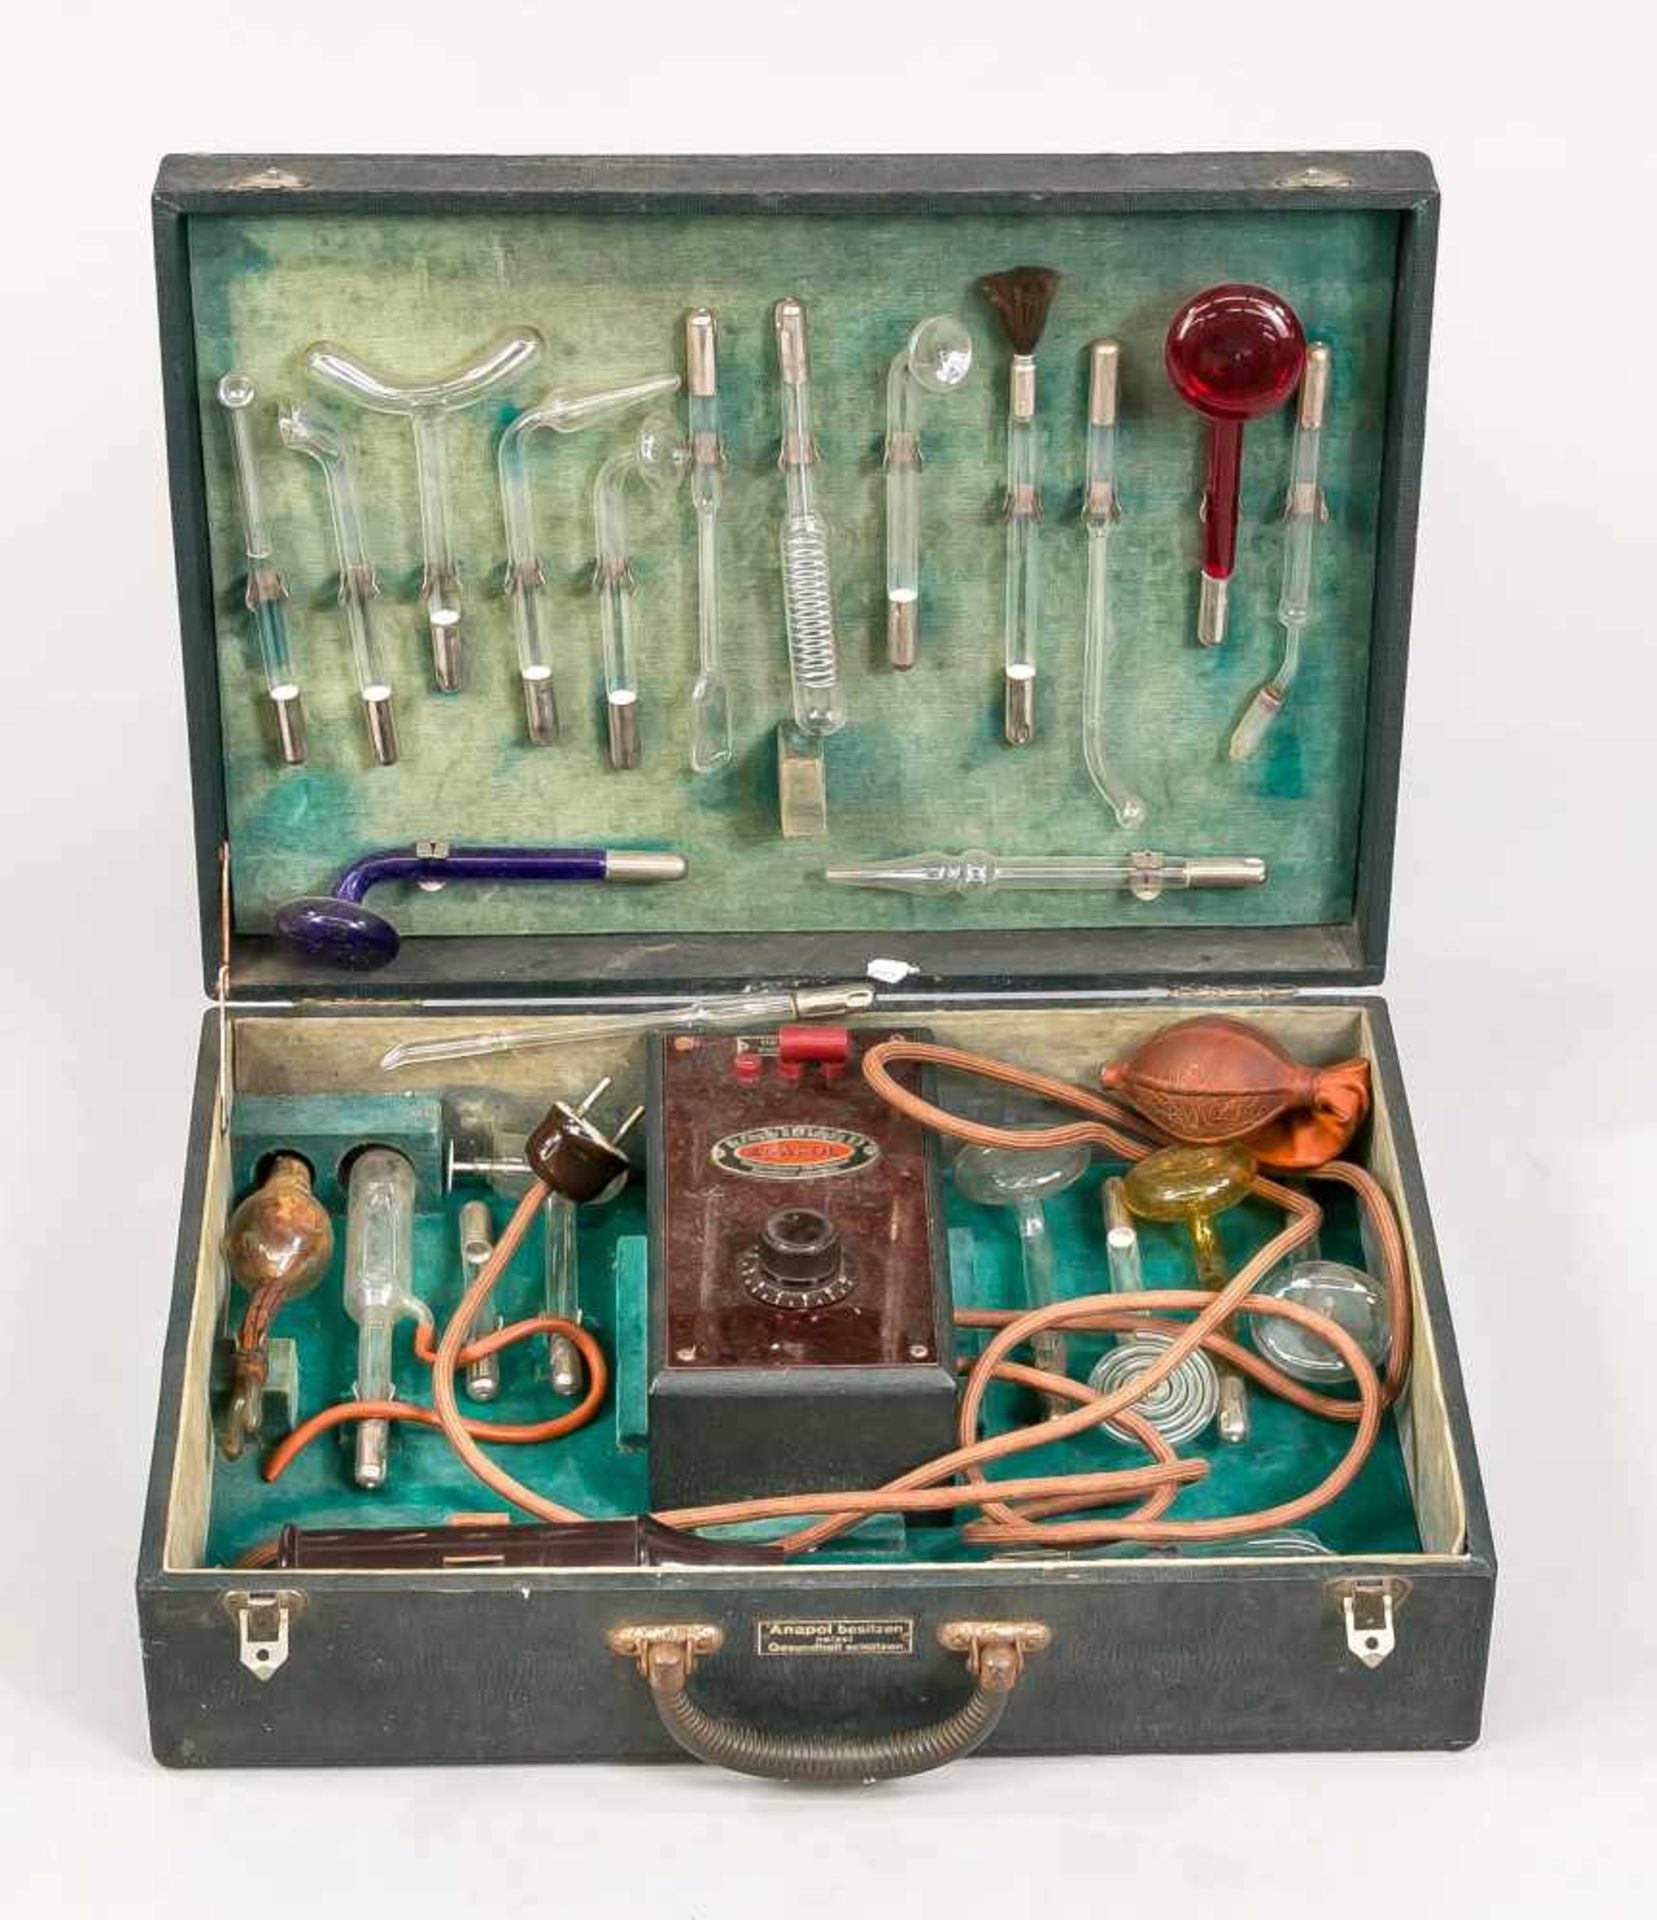 Koffer mit medizinischem Gerät, Deutschland, wohl um 1920. Mit grünem Samt ausgeschlagener